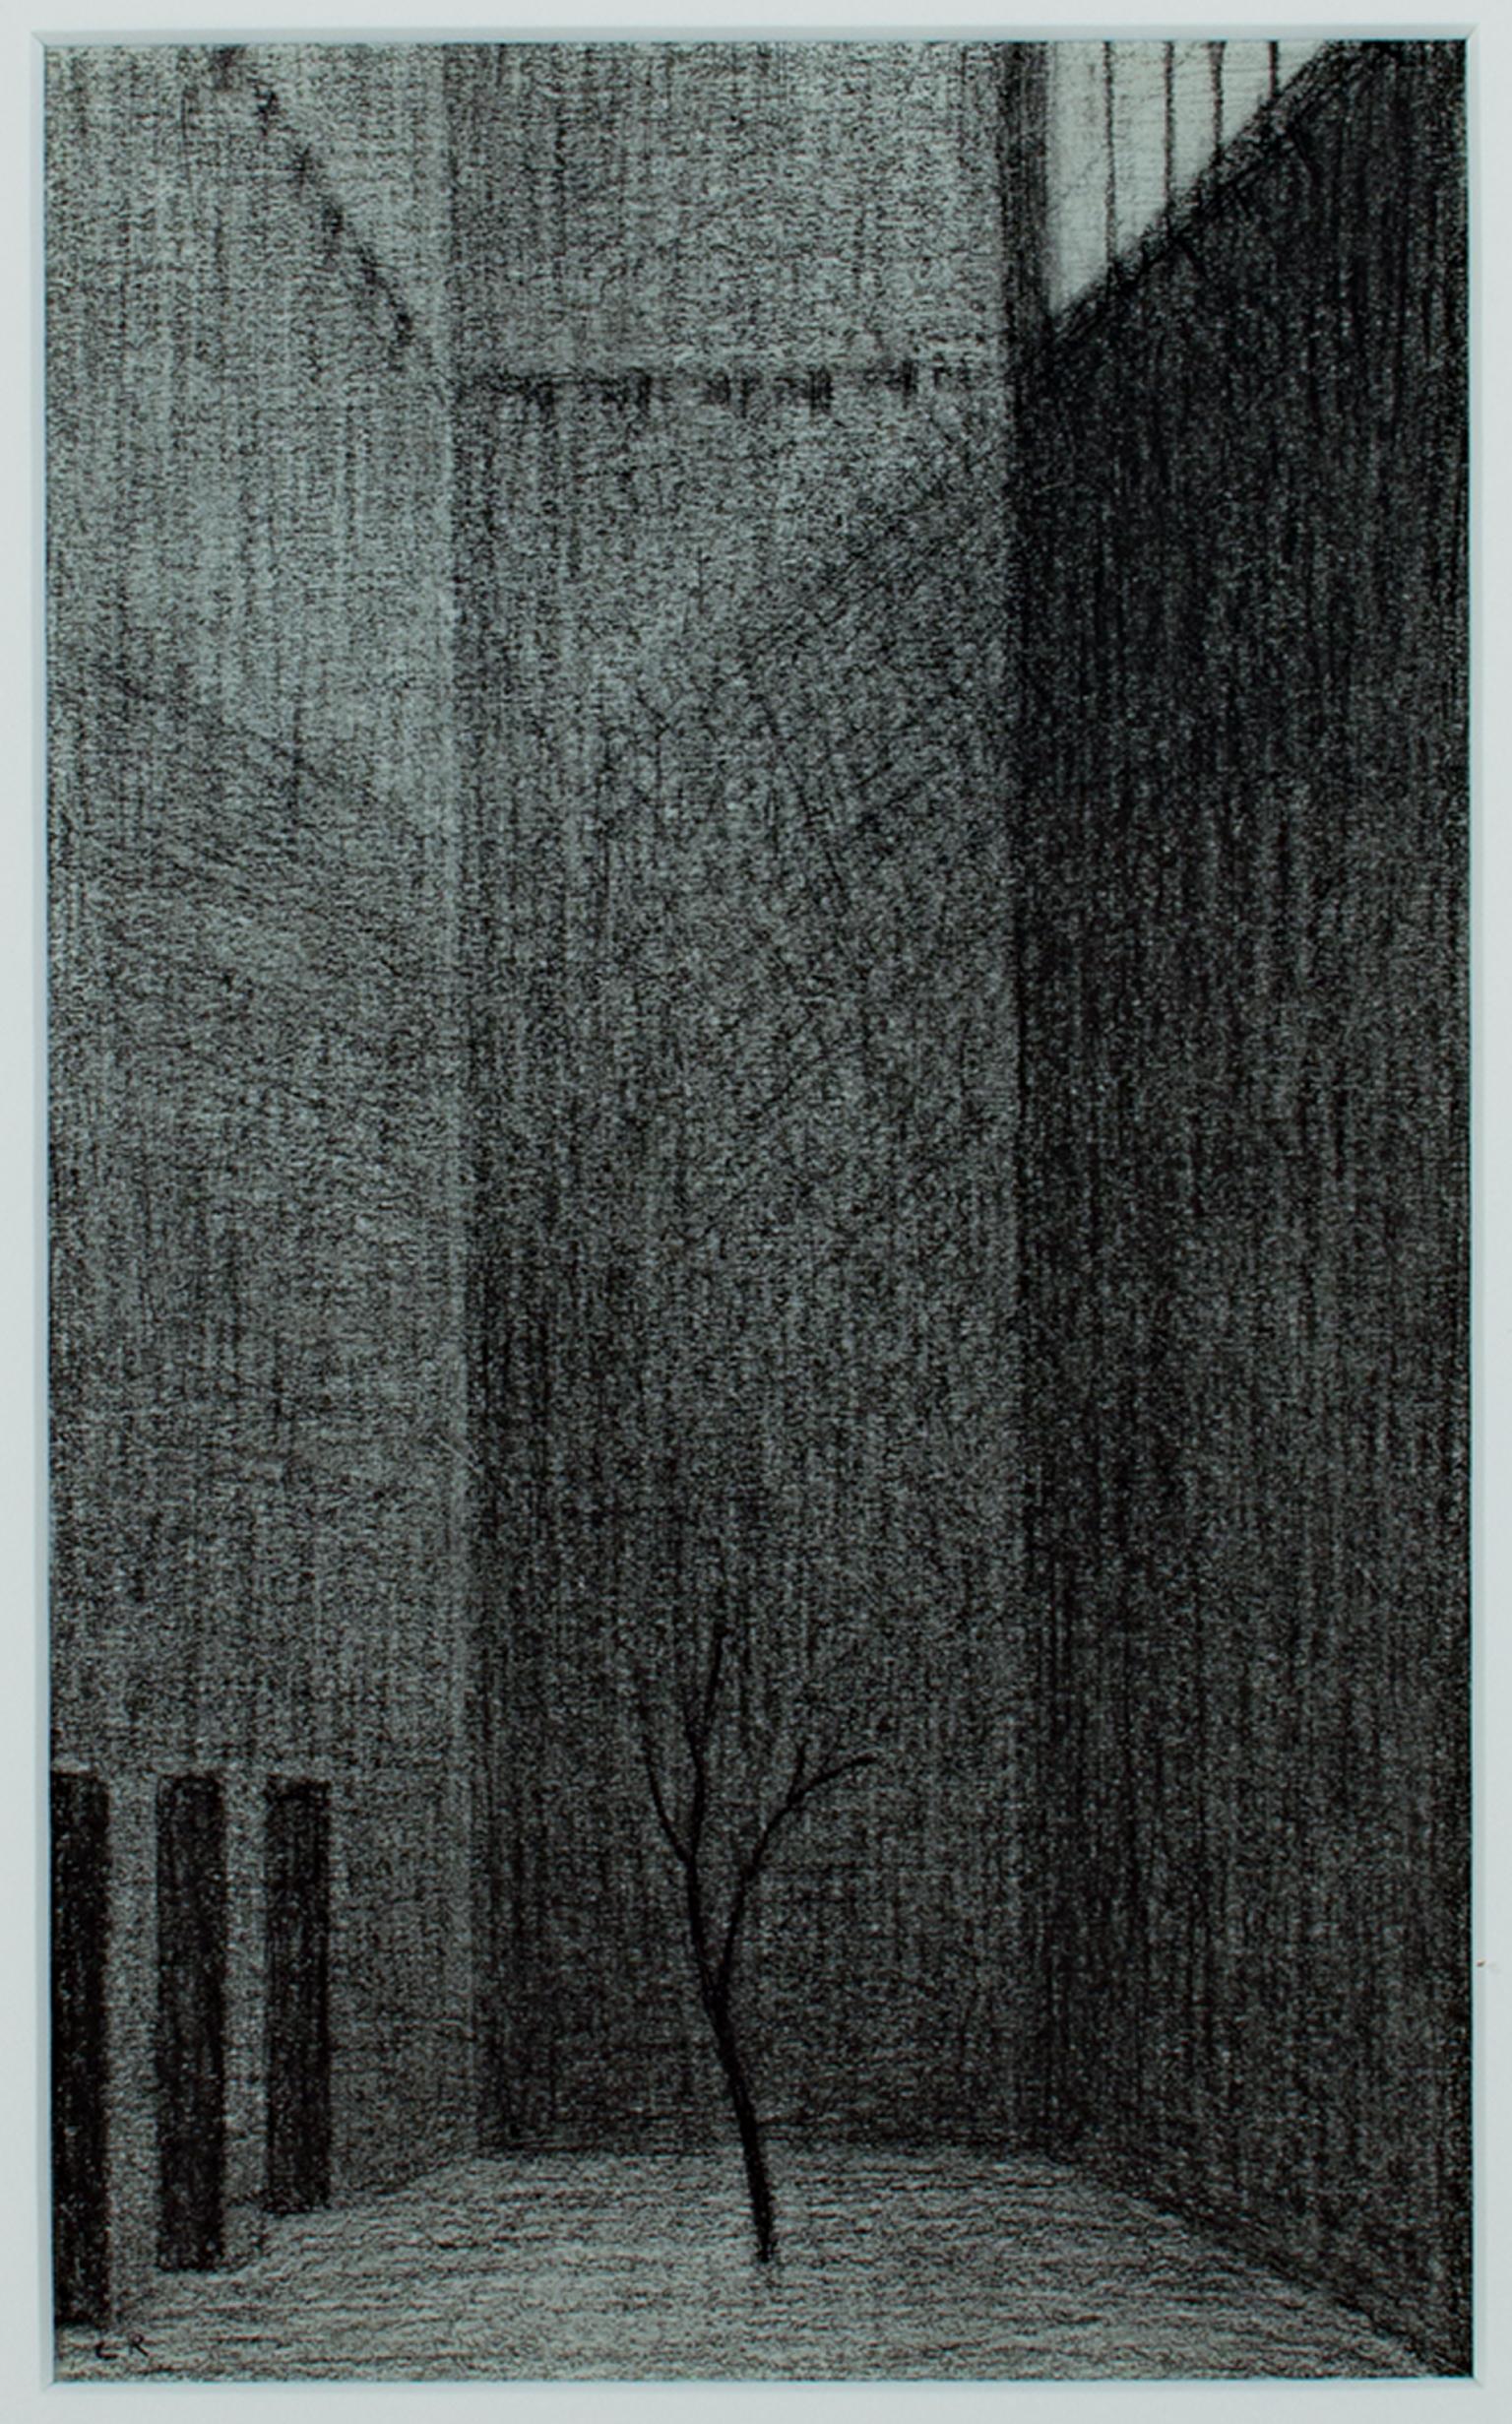 « Tree in Court », dessin de Conte noir et blanc signé par Laurence Rathsack